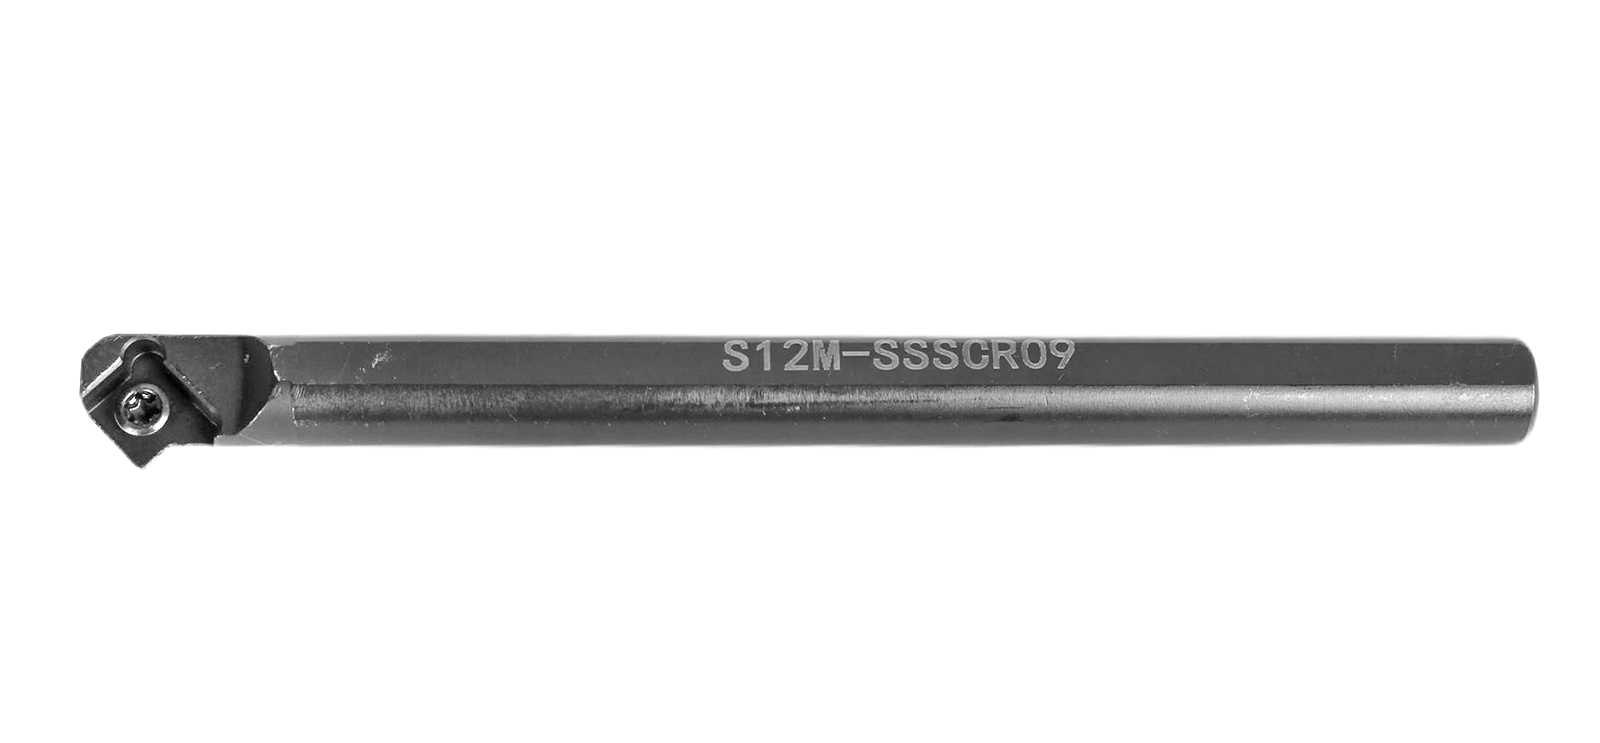 Резец токарный расточной  для продольного и контурного точения S12M-SSSCR09 фотография №1